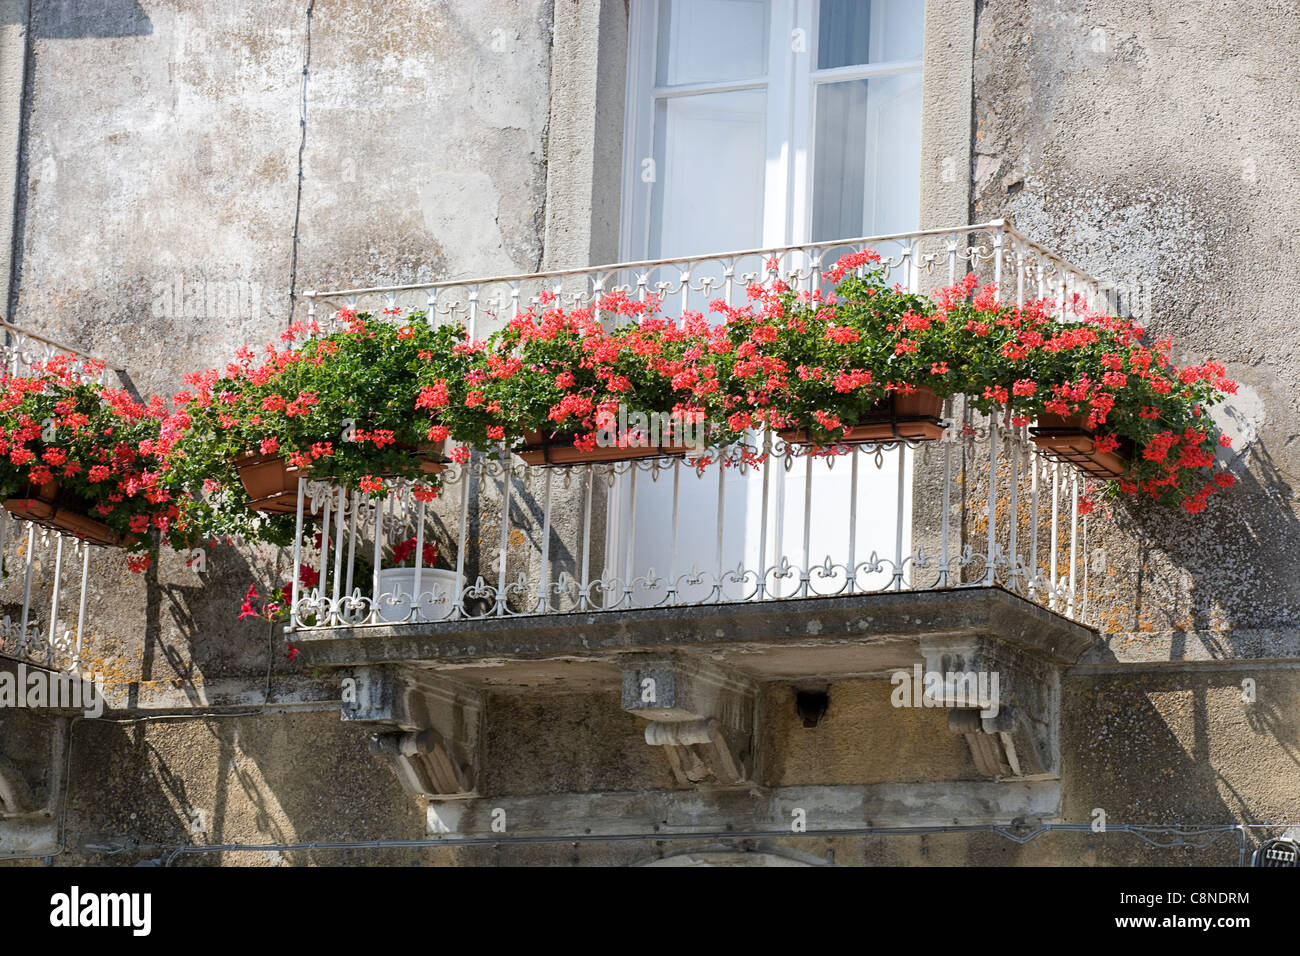 Italie, Sicile, Novara di Sicilia, balcon avec des géraniums rouges dans les jardinières Banque D'Images